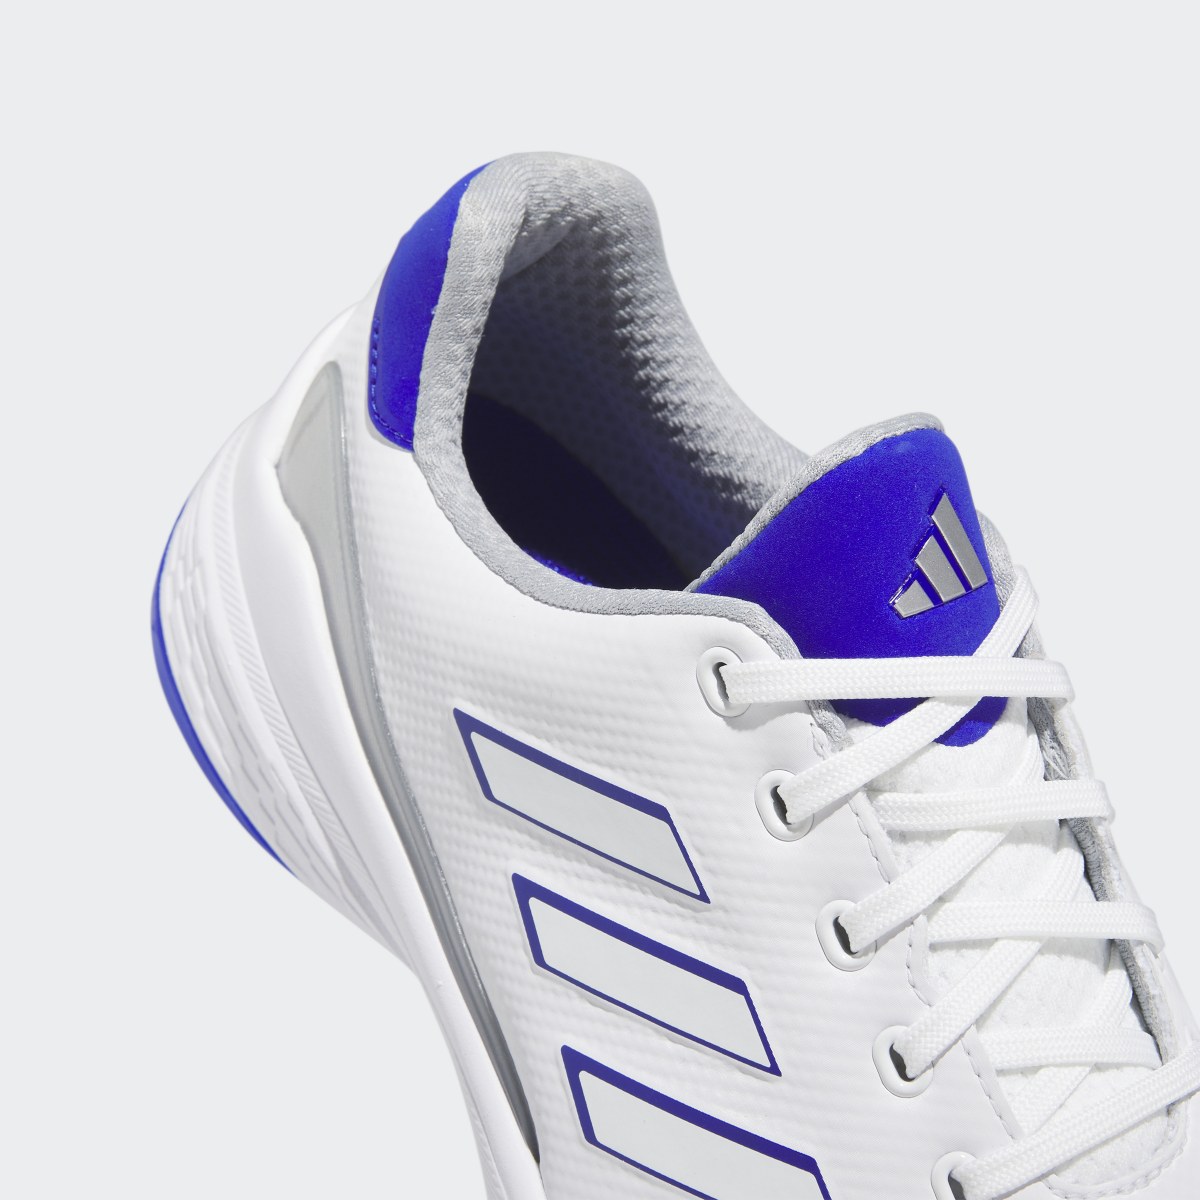 Adidas ZG23 Golf Shoes. 4